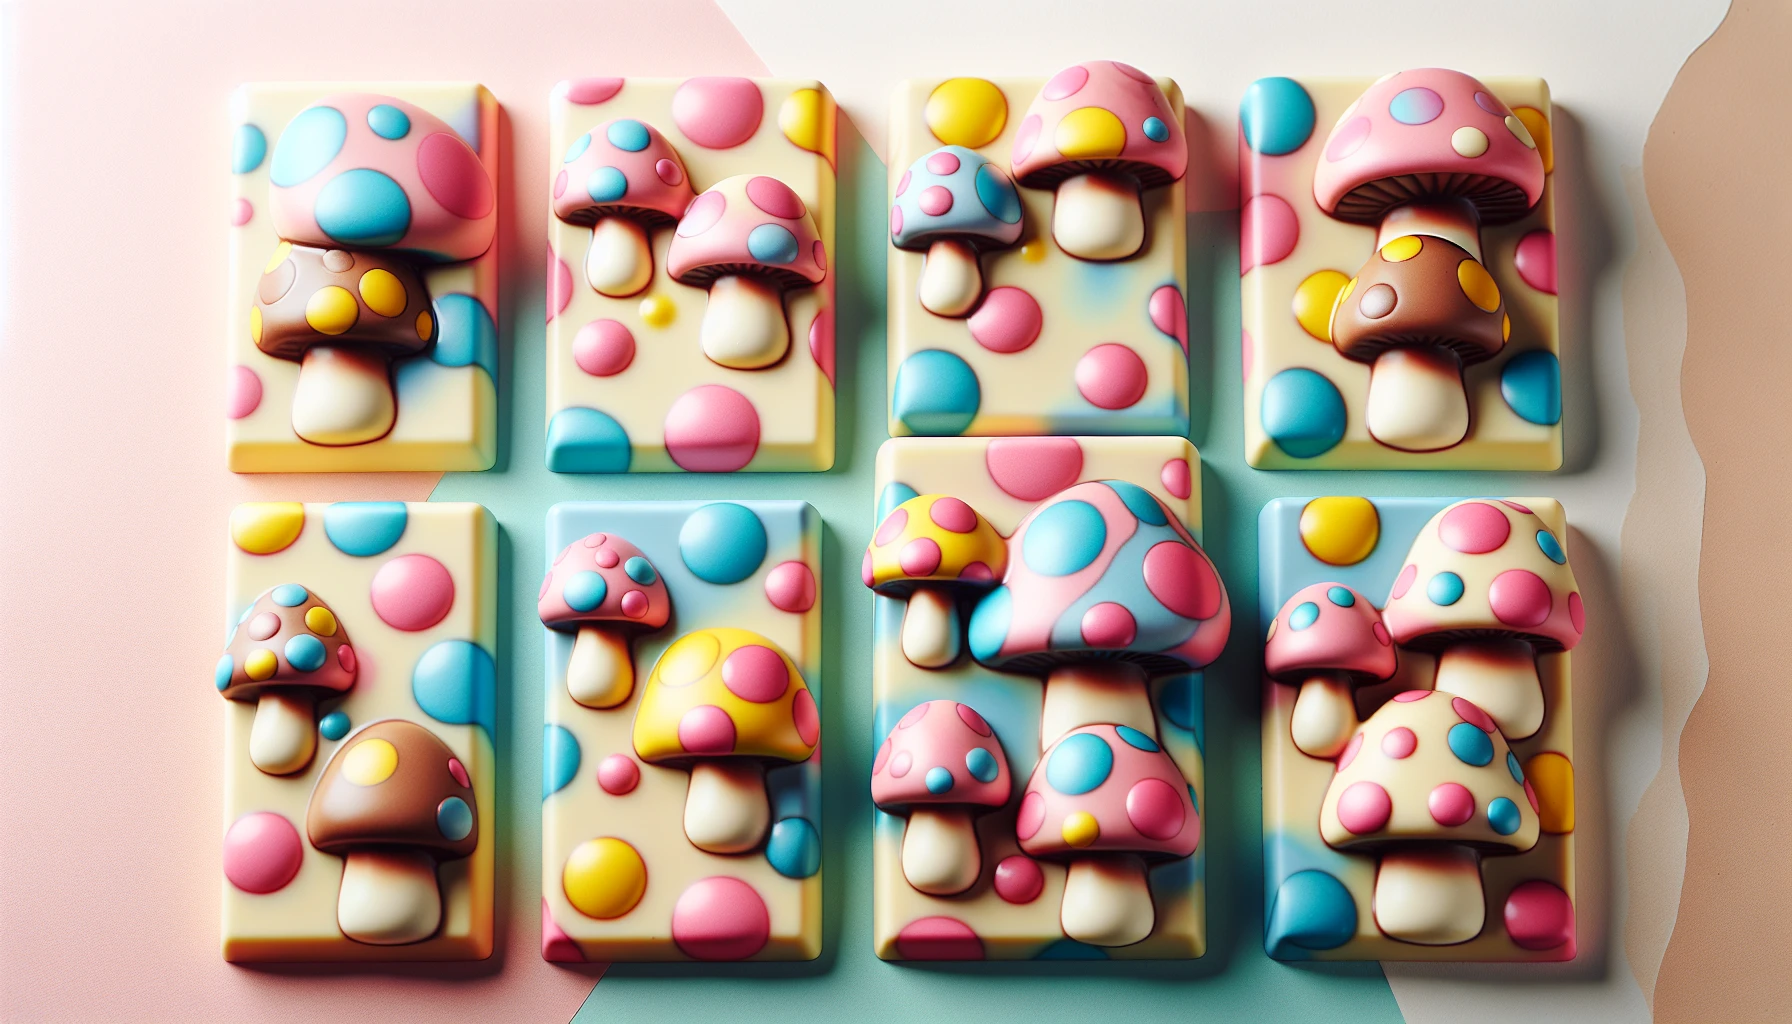 Colorful polka dot chocolate bars